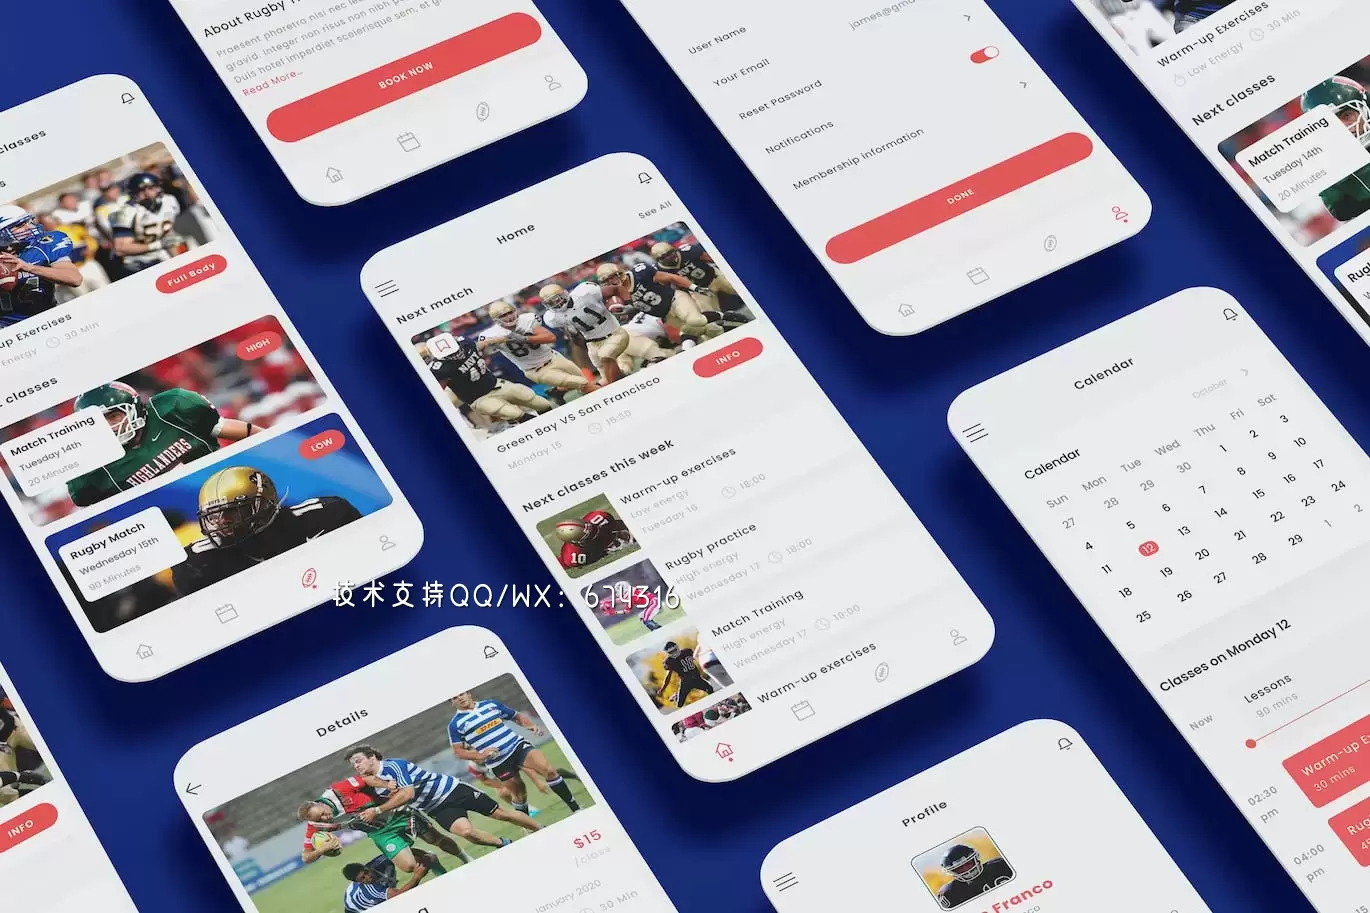 橄榄球学校App UI Kit (AI,EPS,FIG,PSD,SKETCH,SVG,XD)免费下载